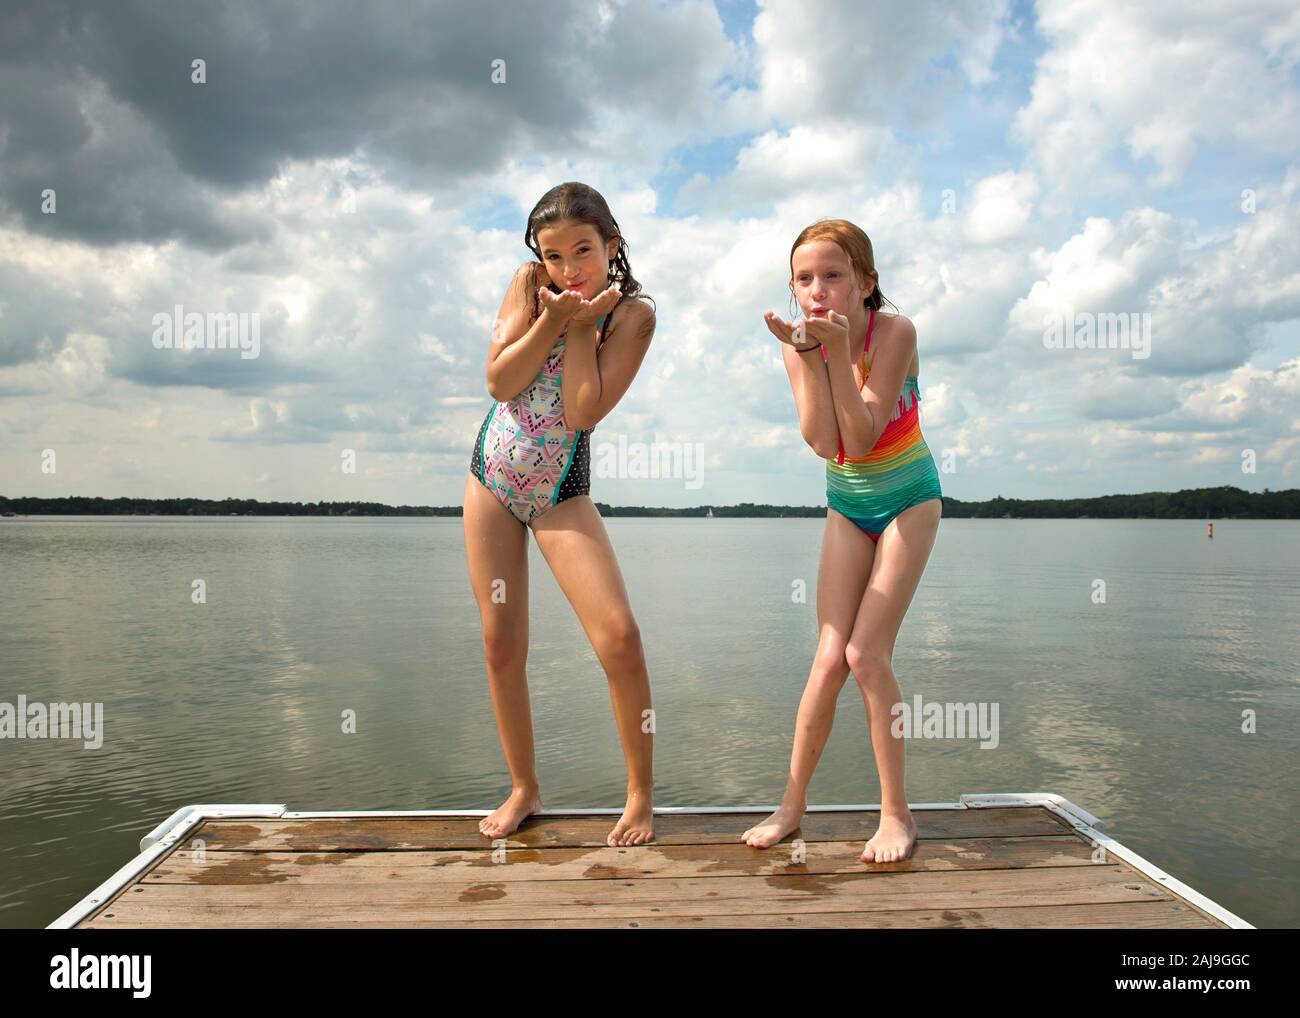 Dos niñas en trajes de baño soplan los besos final de Dock by Lake Fotografía de stock - Alamy